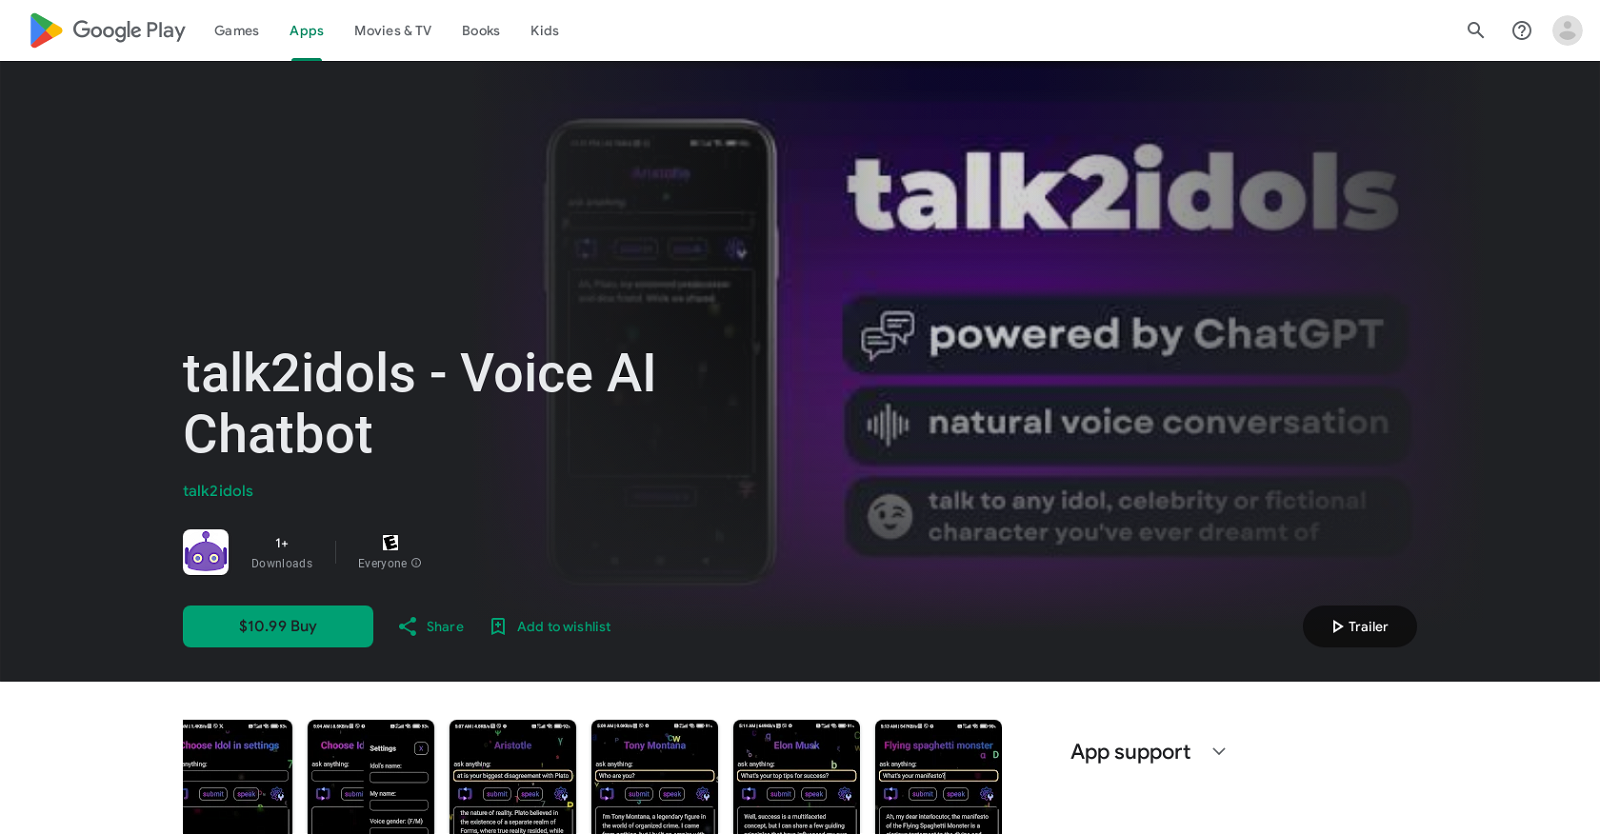 Talk2idols website